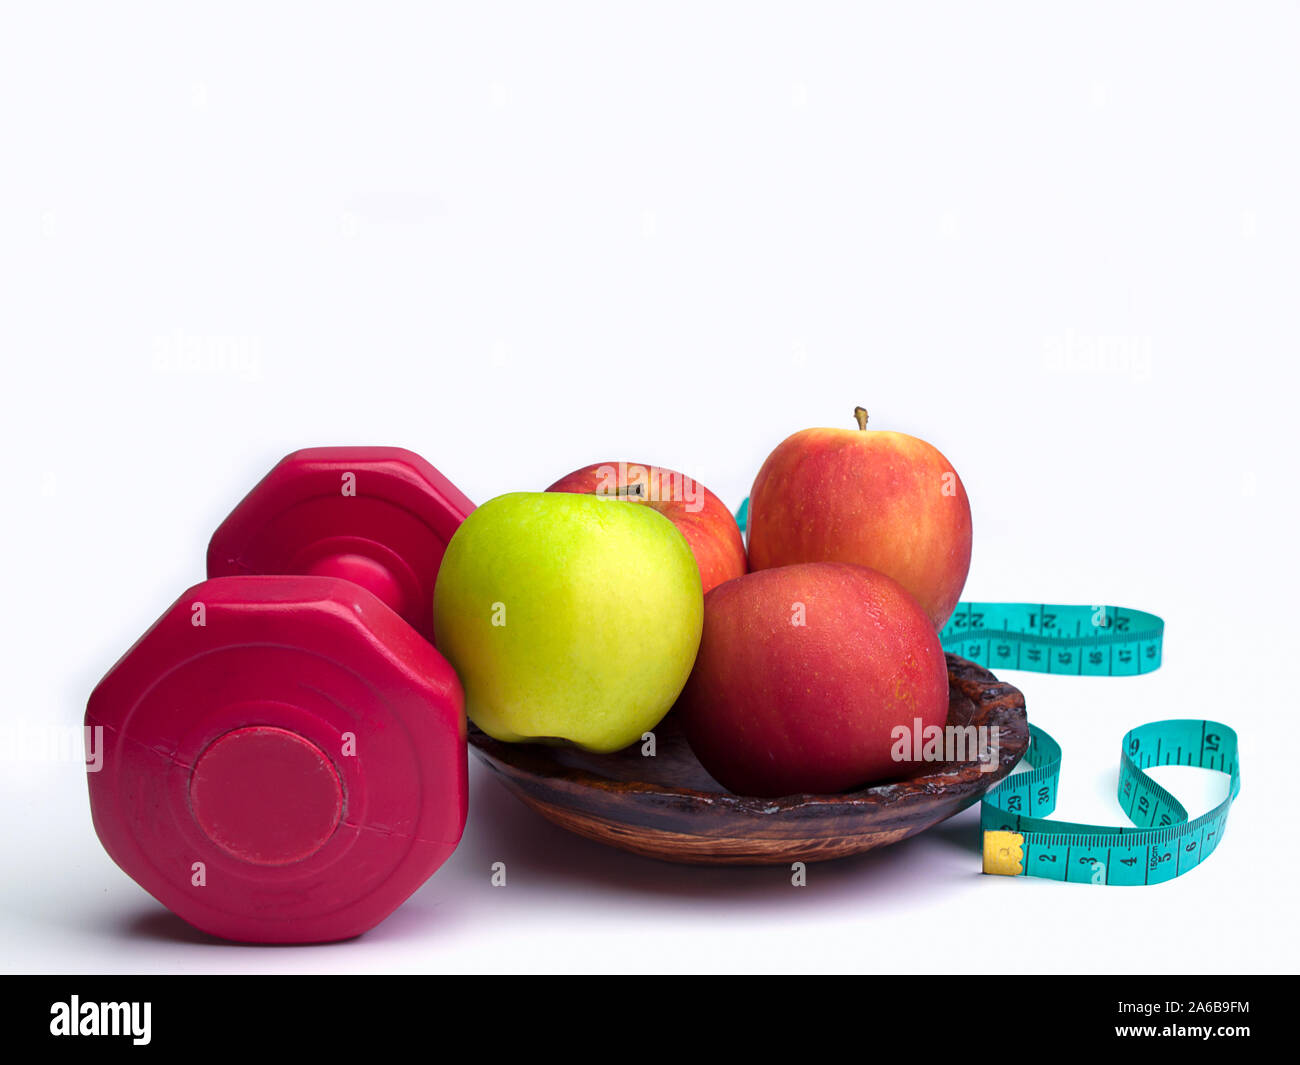 Haltères rouge avec bande de mesure de poids et régime alimentaire pour apple concept sur fond blanc Banque D'Images